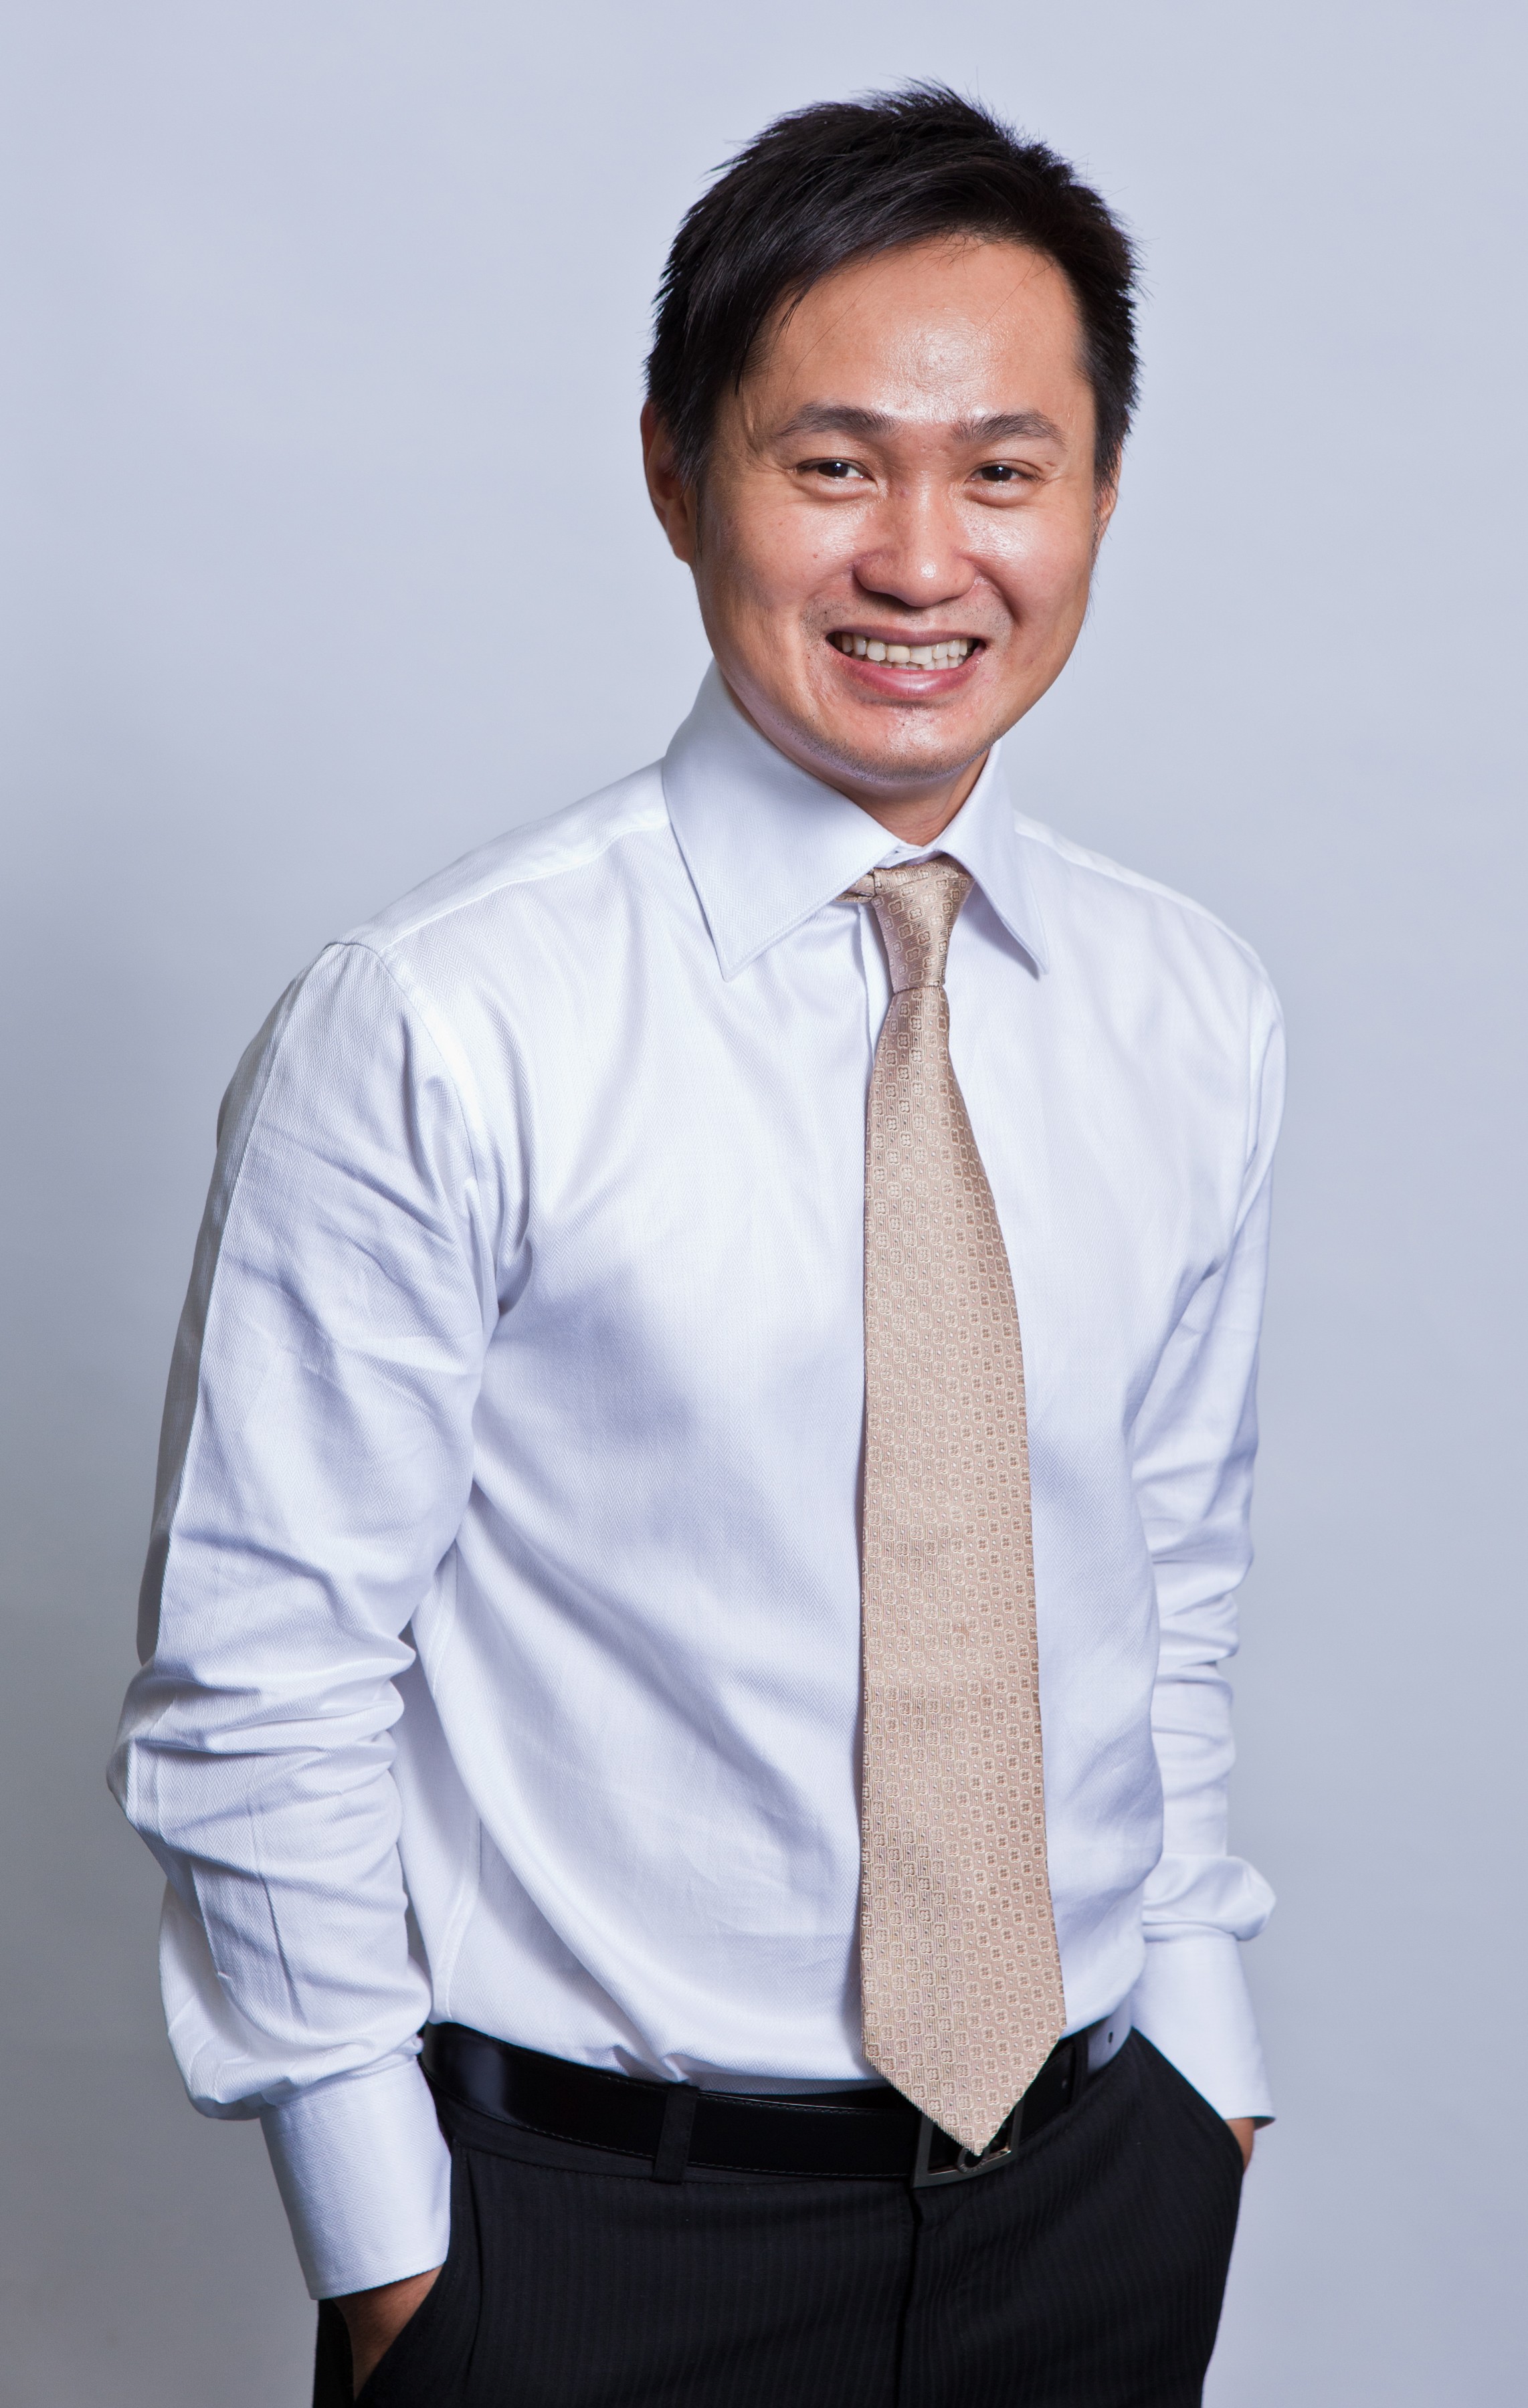 Jonathan Phua, CEO and executive director